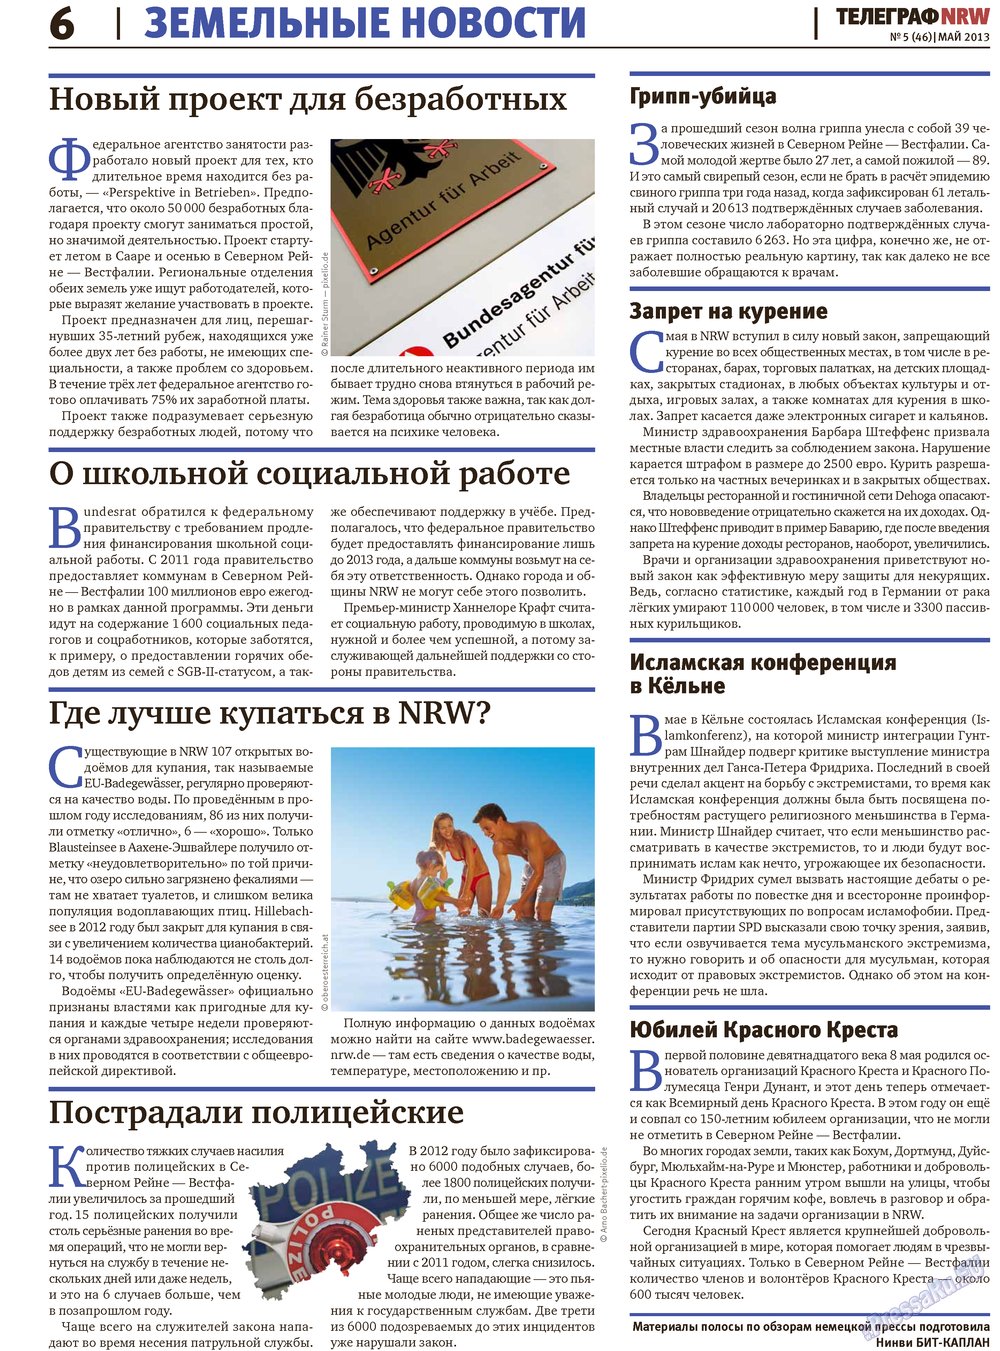 Телеграф NRW (газета). 2013 год, номер 5, стр. 6